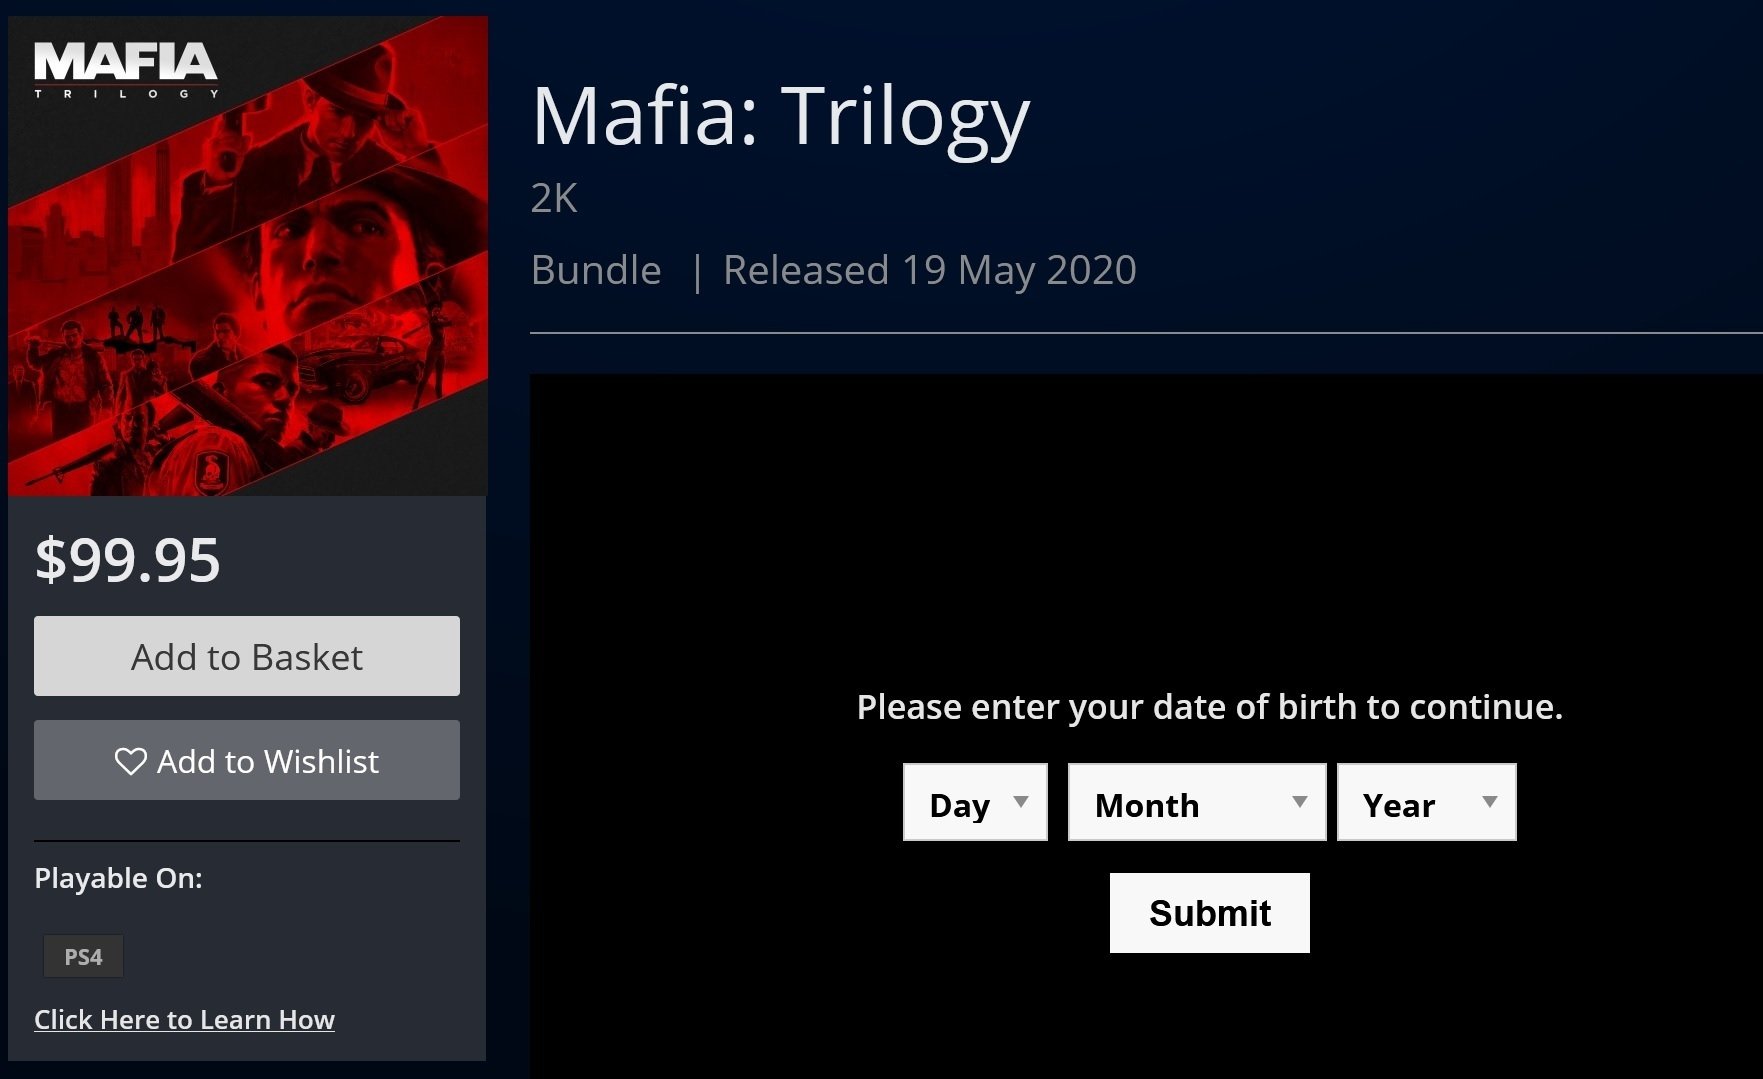 Купить Mafia 3 (Xbox One, русские субтитры) на Xbox One за 1 100 руб. в  Москве